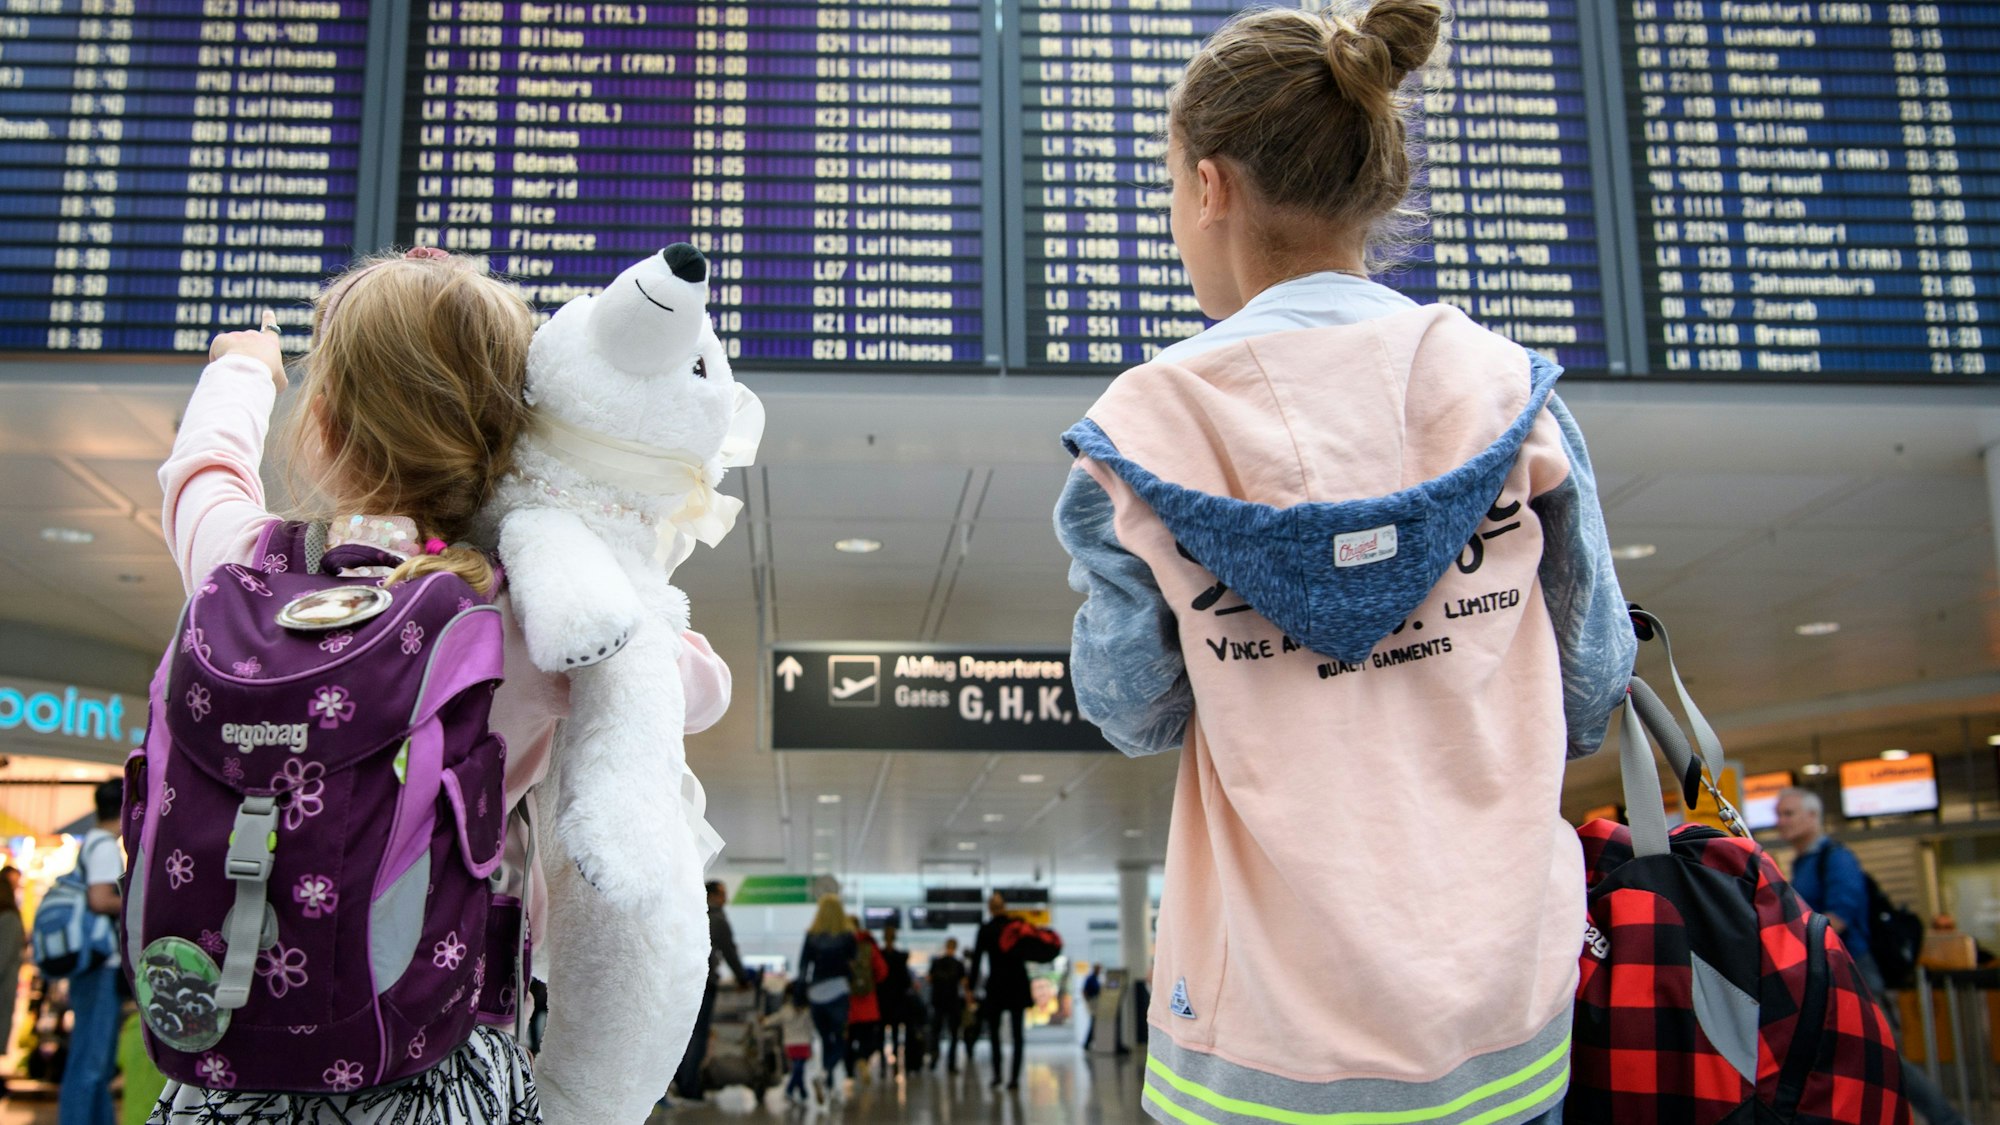 Zwei Mädchen blicken auf eine Abflugtafel am Flughafen. Eines trägt einen weißen Teddy im Arm.